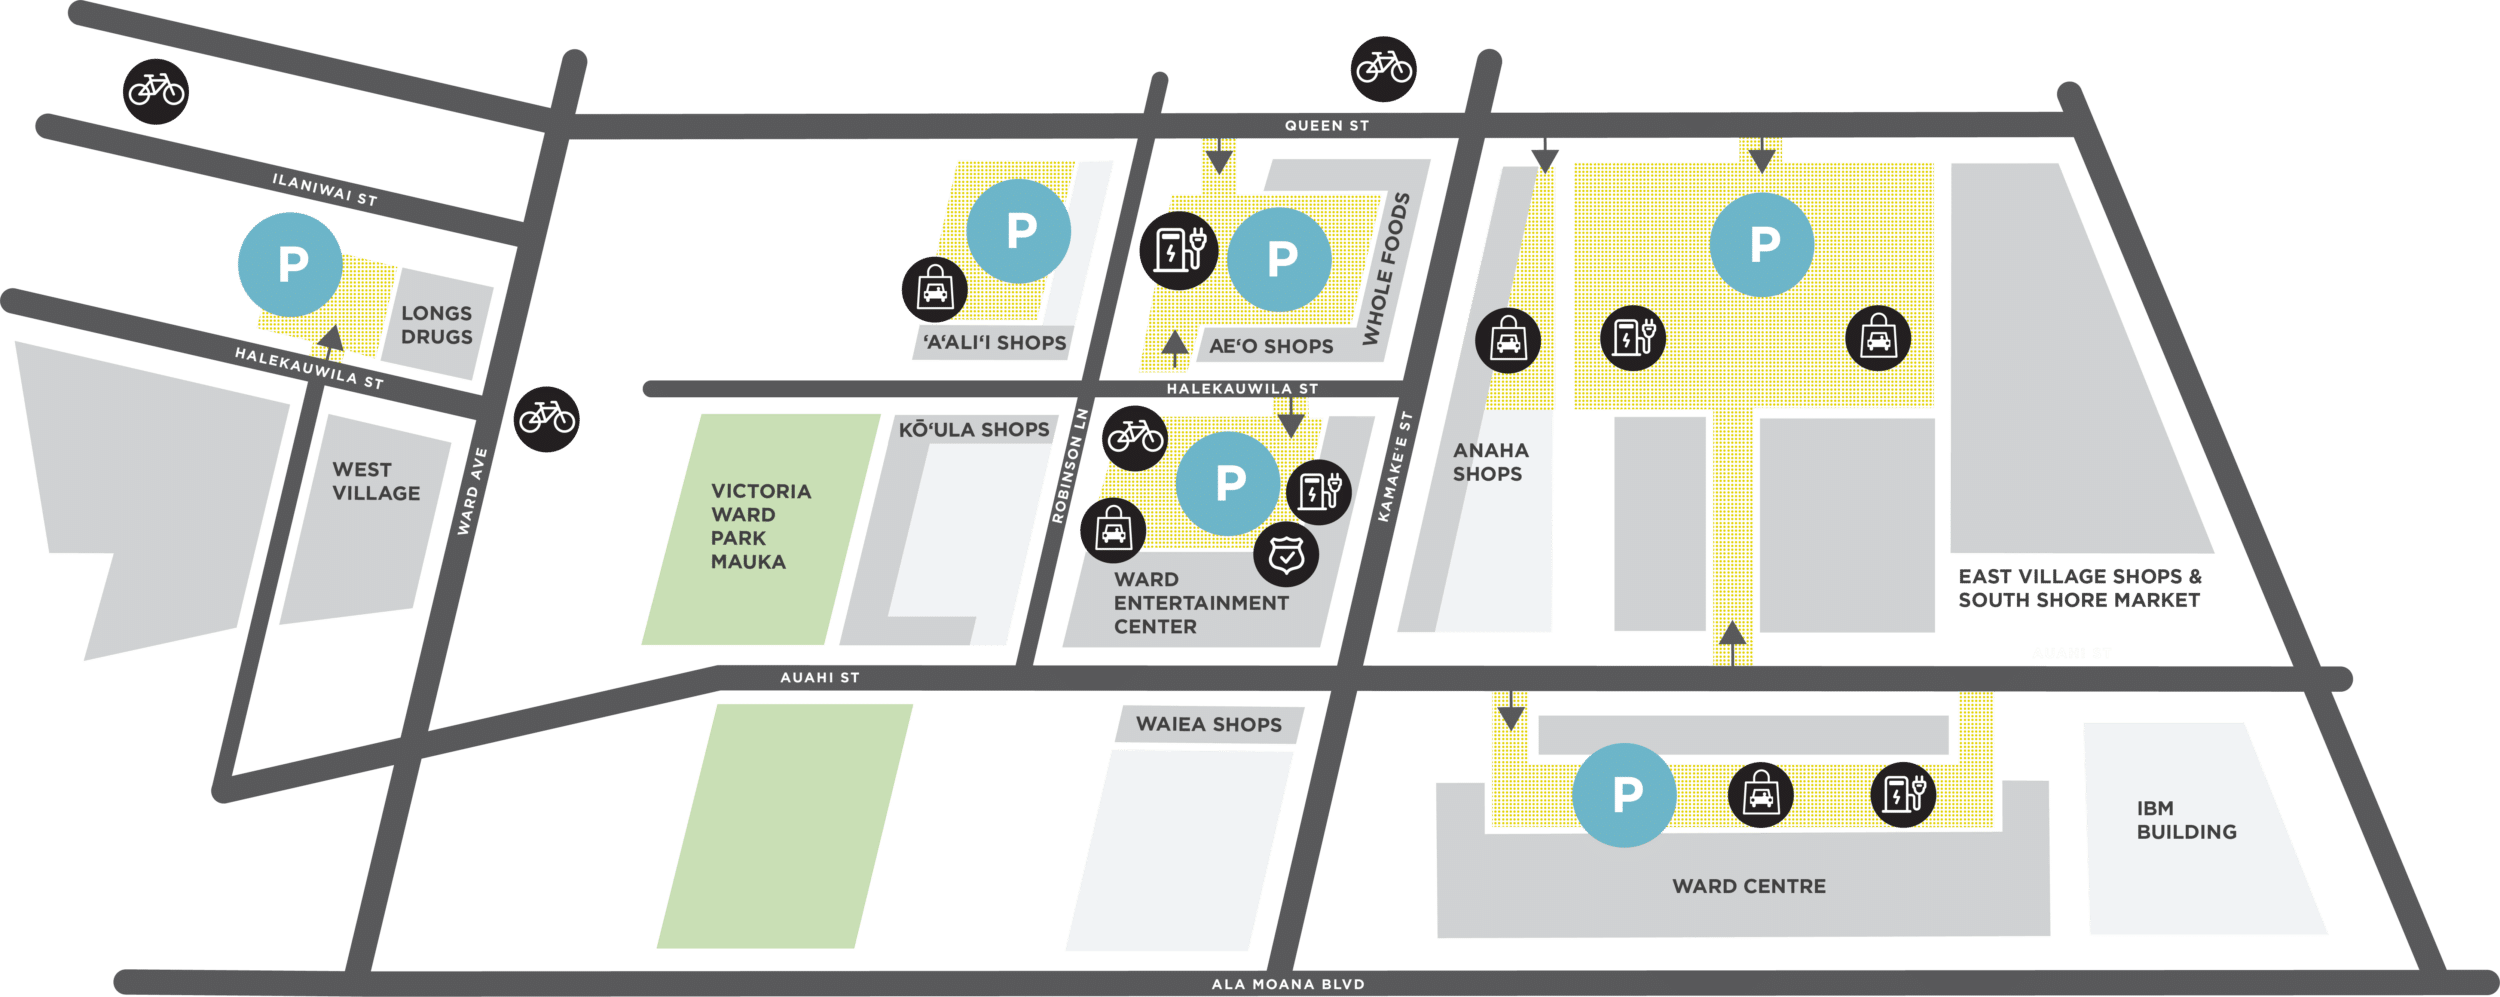 Ward Village Parking Map